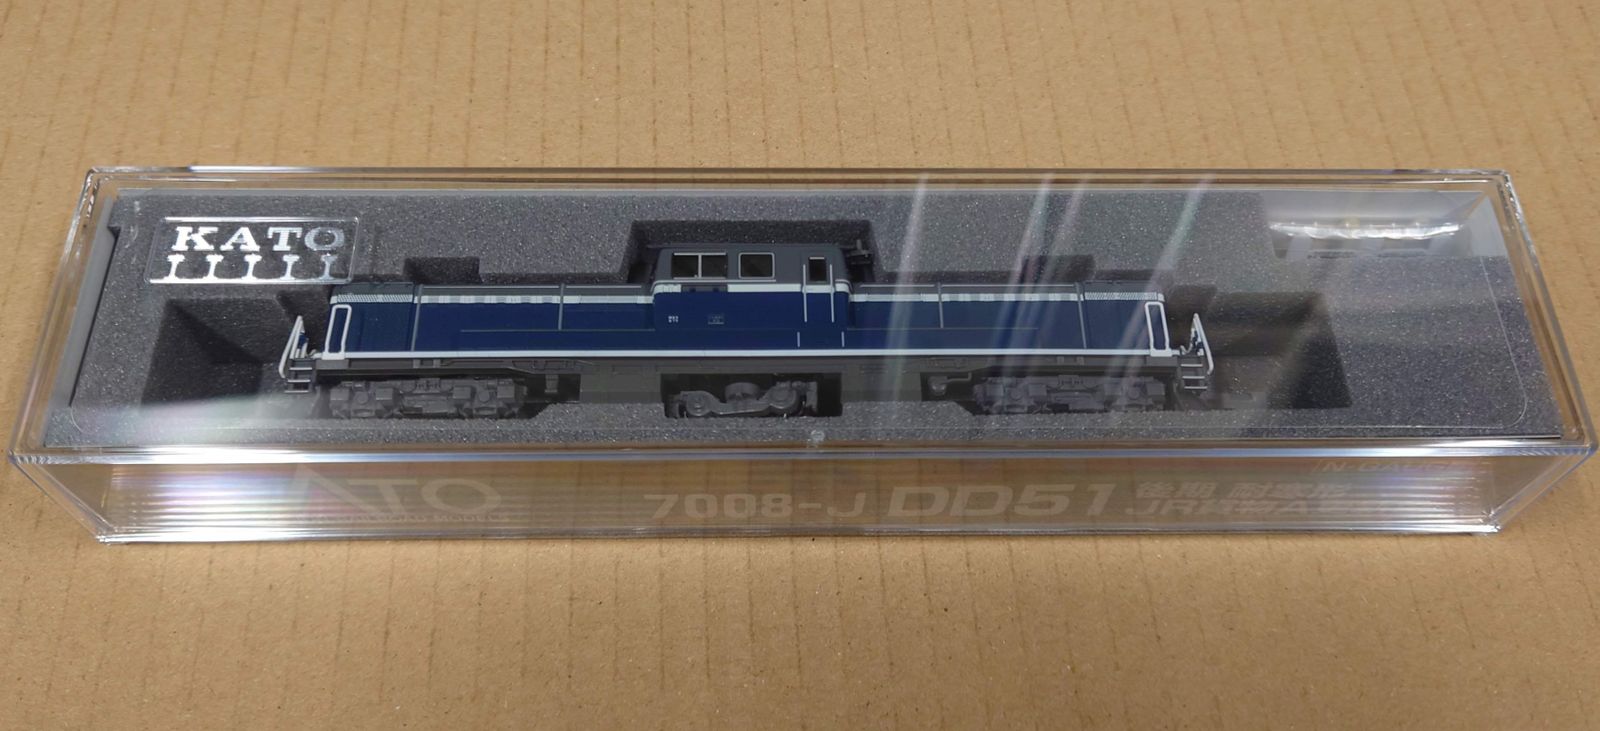 KATO 7008-J DD51 後期 耐寒形 JR貨物A更新色 - メルカリ